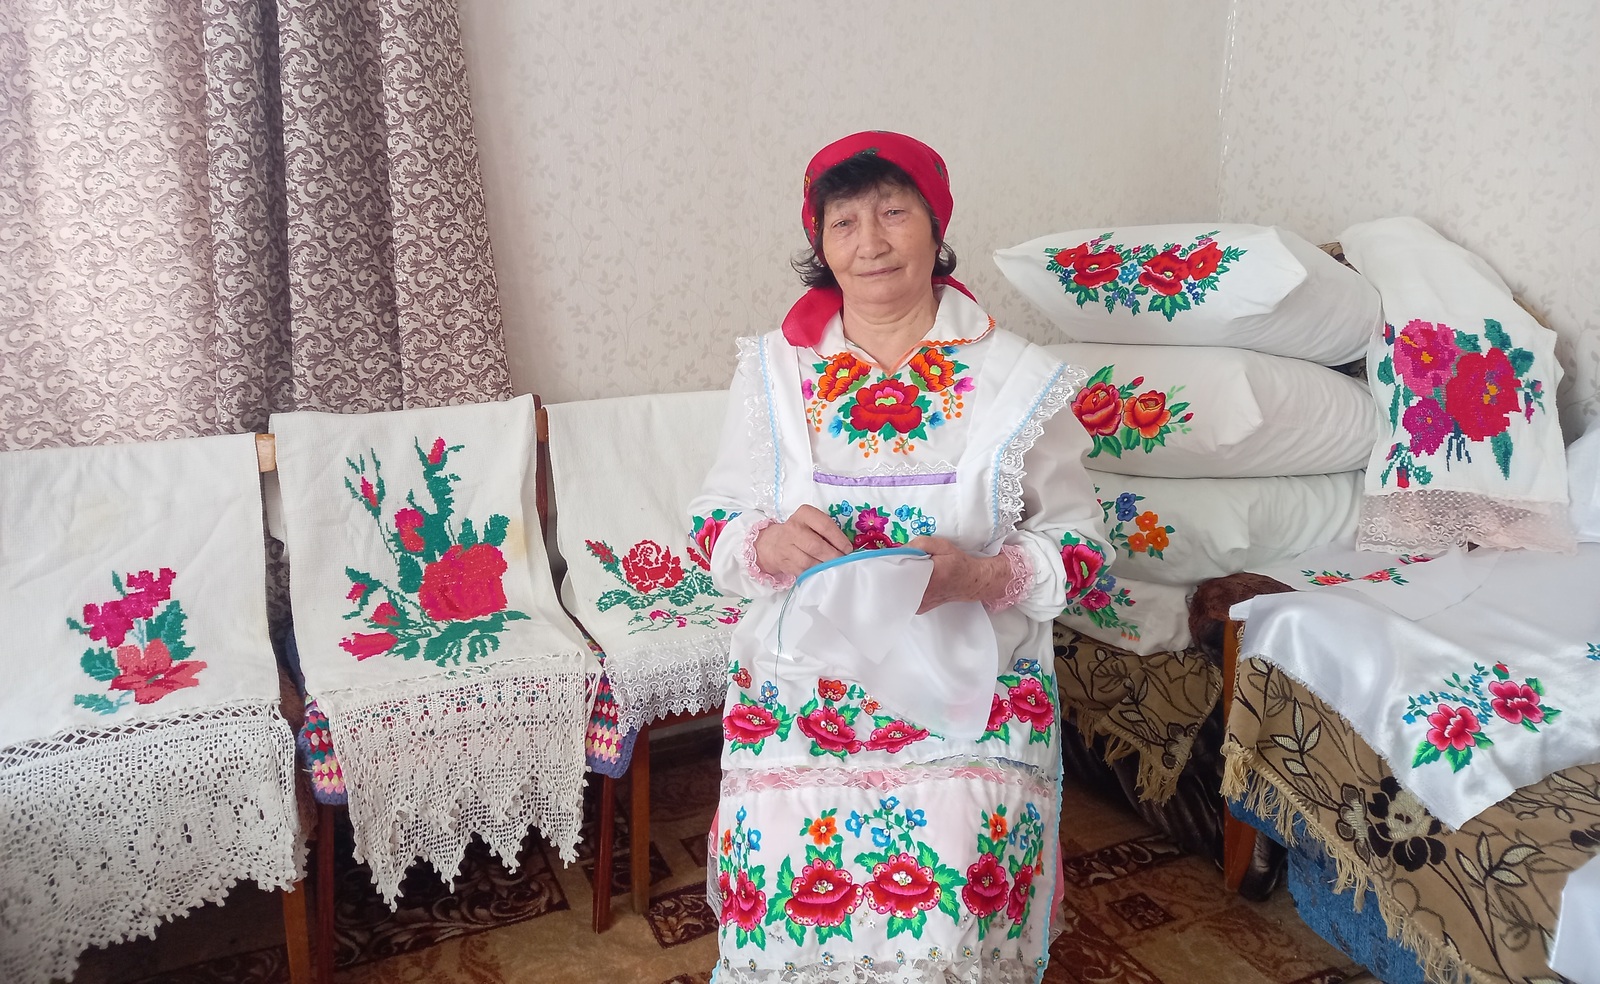 Алефтина Тимиркаева – труженица, рукодельница, хранительница семейного очага